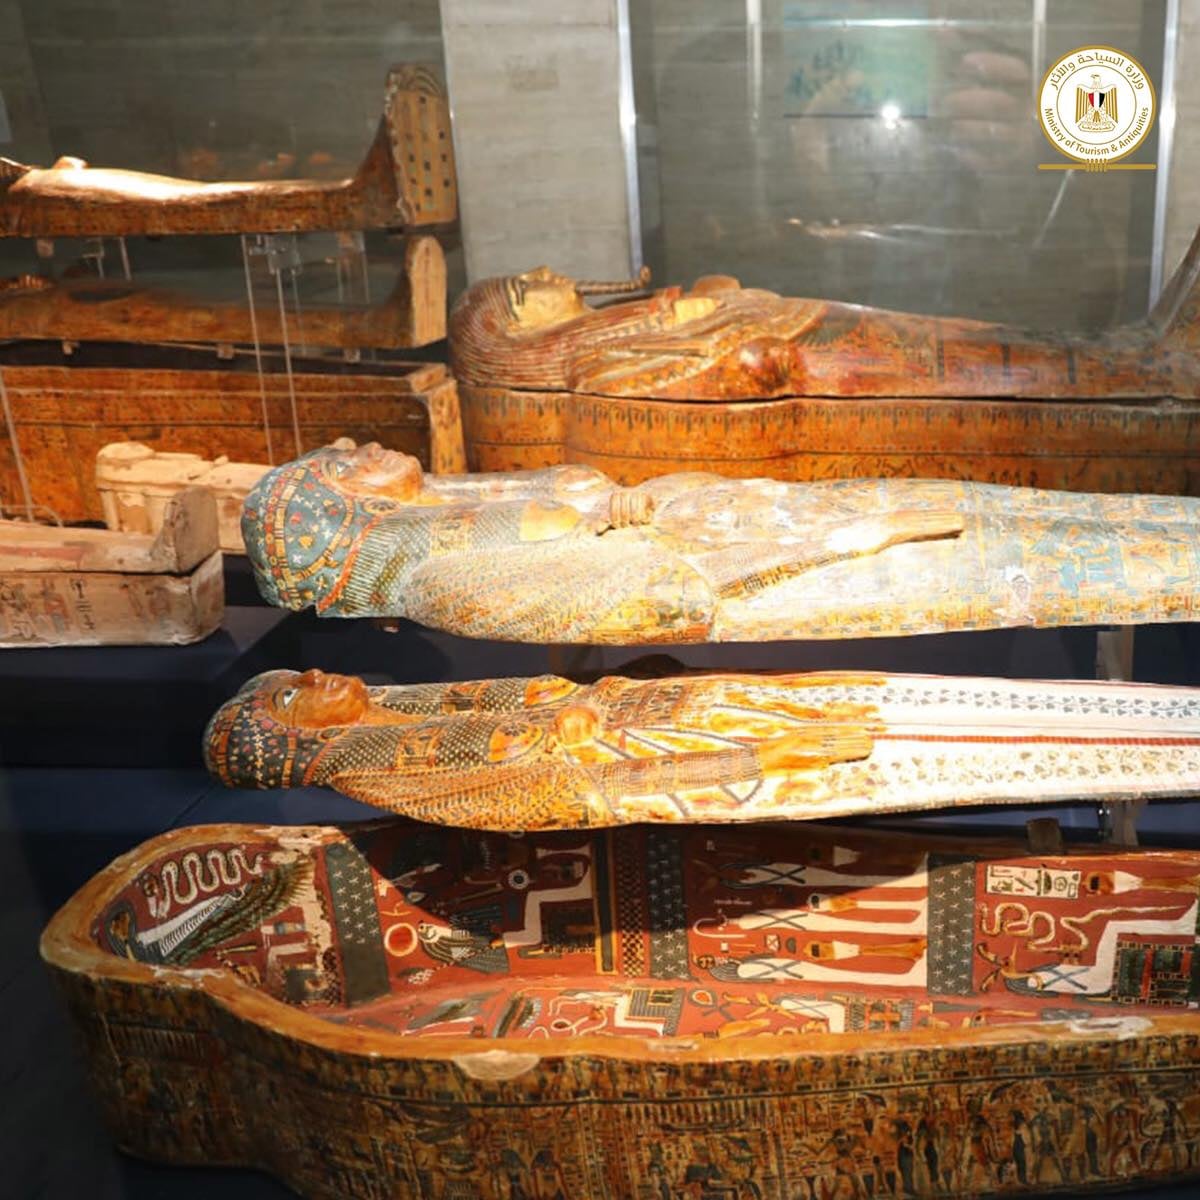 المتحف المصرى ٢٠٠ عام علم مصريات بعد نقل المومياوات الملكية من القاعة التى كانت مخصصة لها فى المتحف وهى FcO8K9BXkAQHLa5